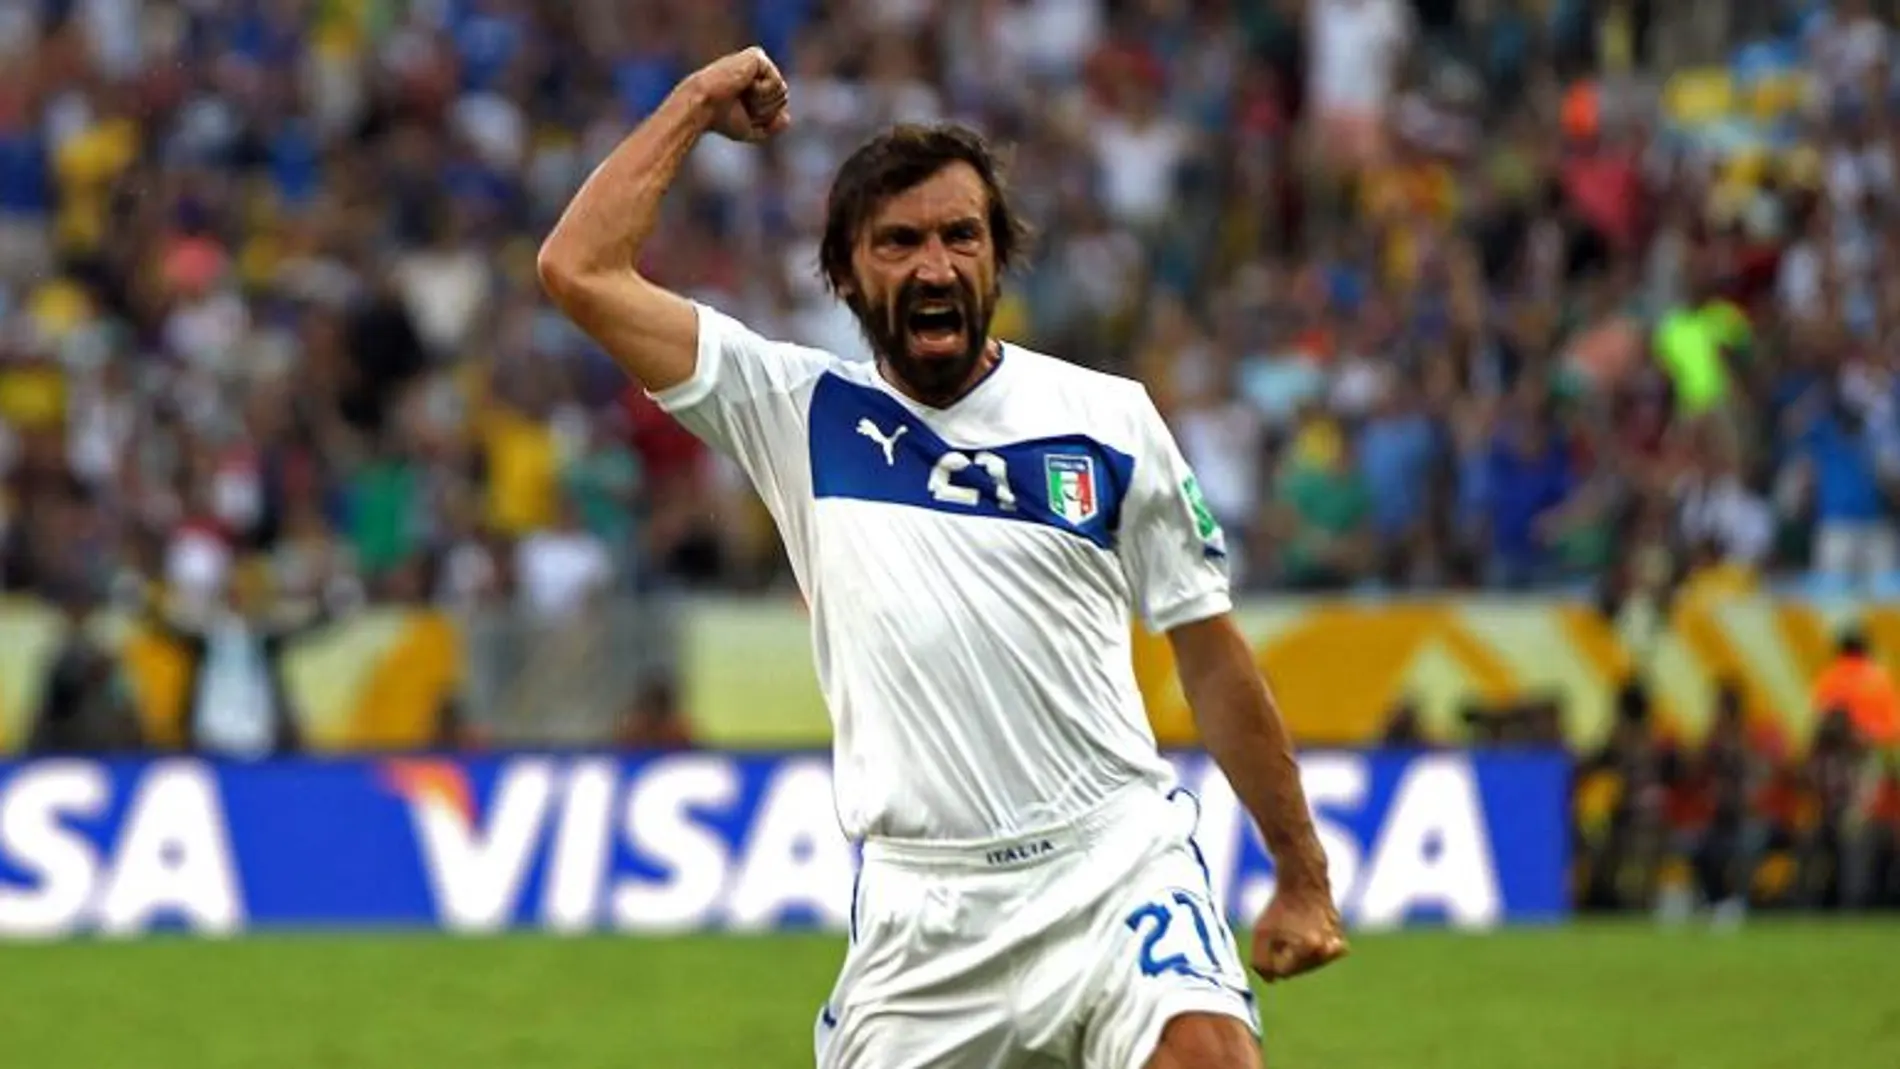 El centrocampista de Italia Andrea Pirlo celebra el gol que ha marcado ante la selección de México